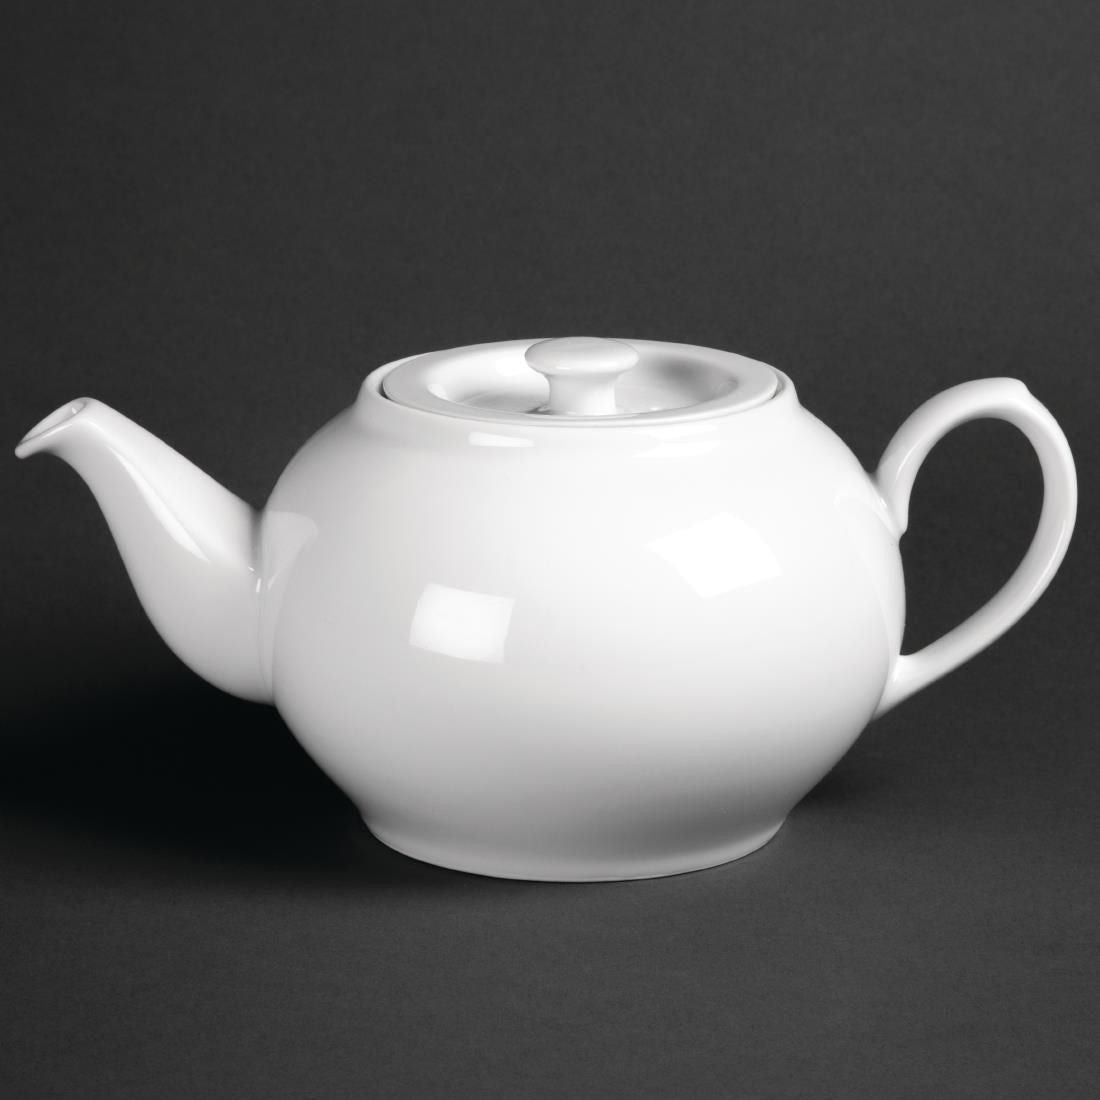 CG125 Royal Porcelain Oriental Teapot with lid 1Ltr